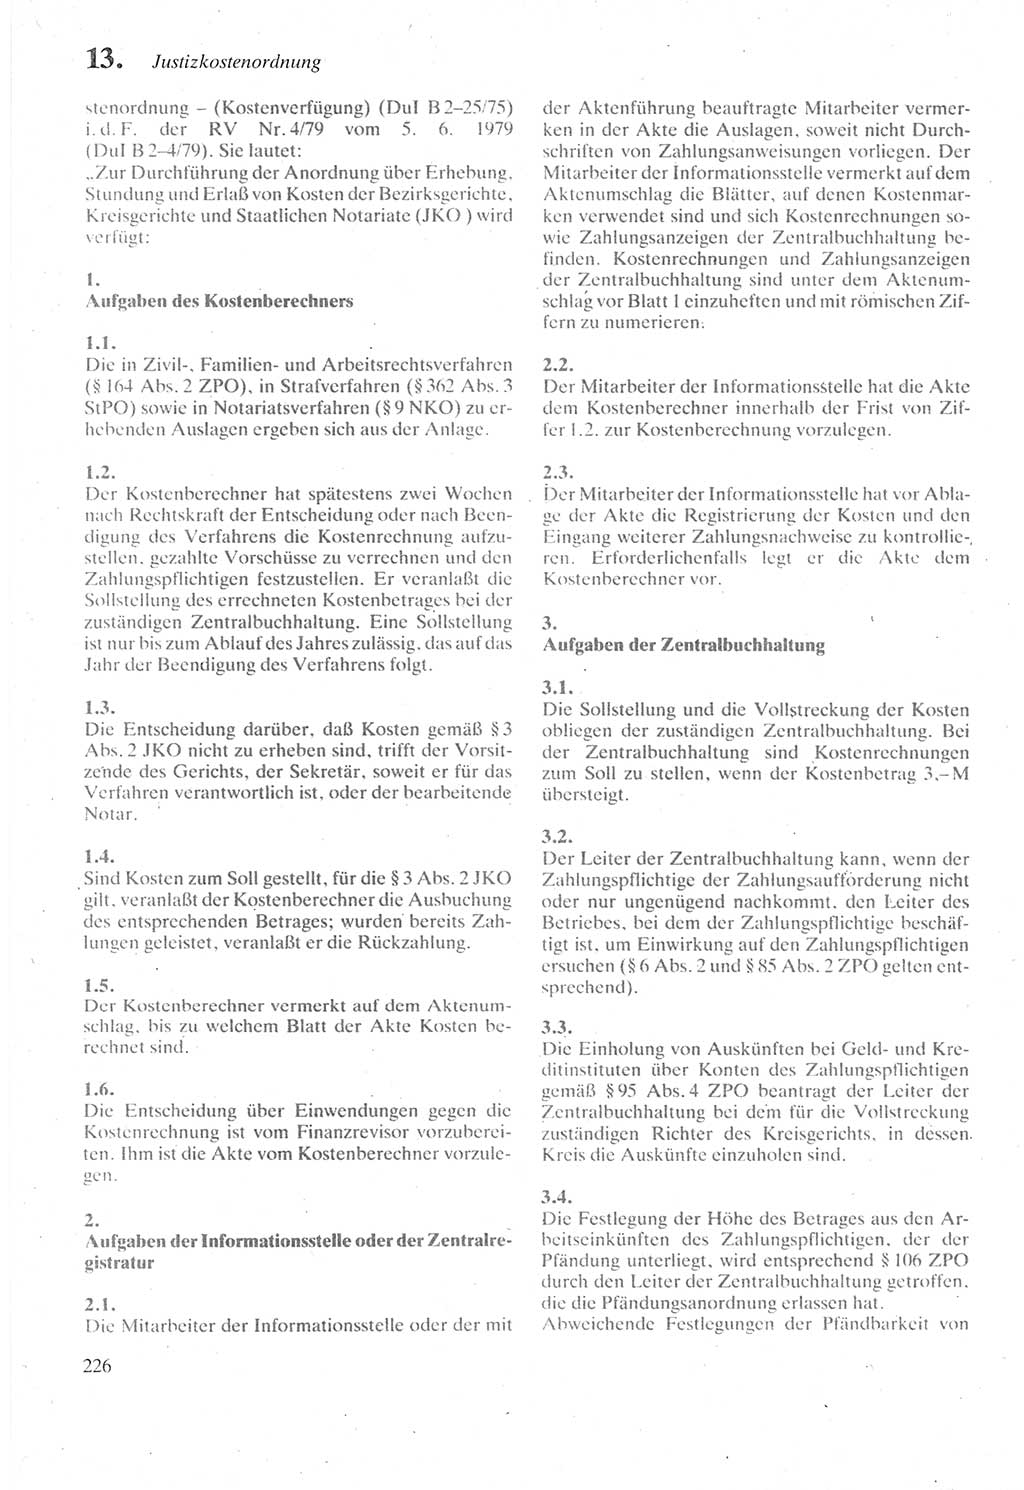 Strafprozeßordnung (StPO) der Deutschen Demokratischen Republik (DDR) sowie angrenzende Gesetze und Bestimmungen 1987, Seite 226 (StPO DDR Ges. Best. 1987, S. 226)